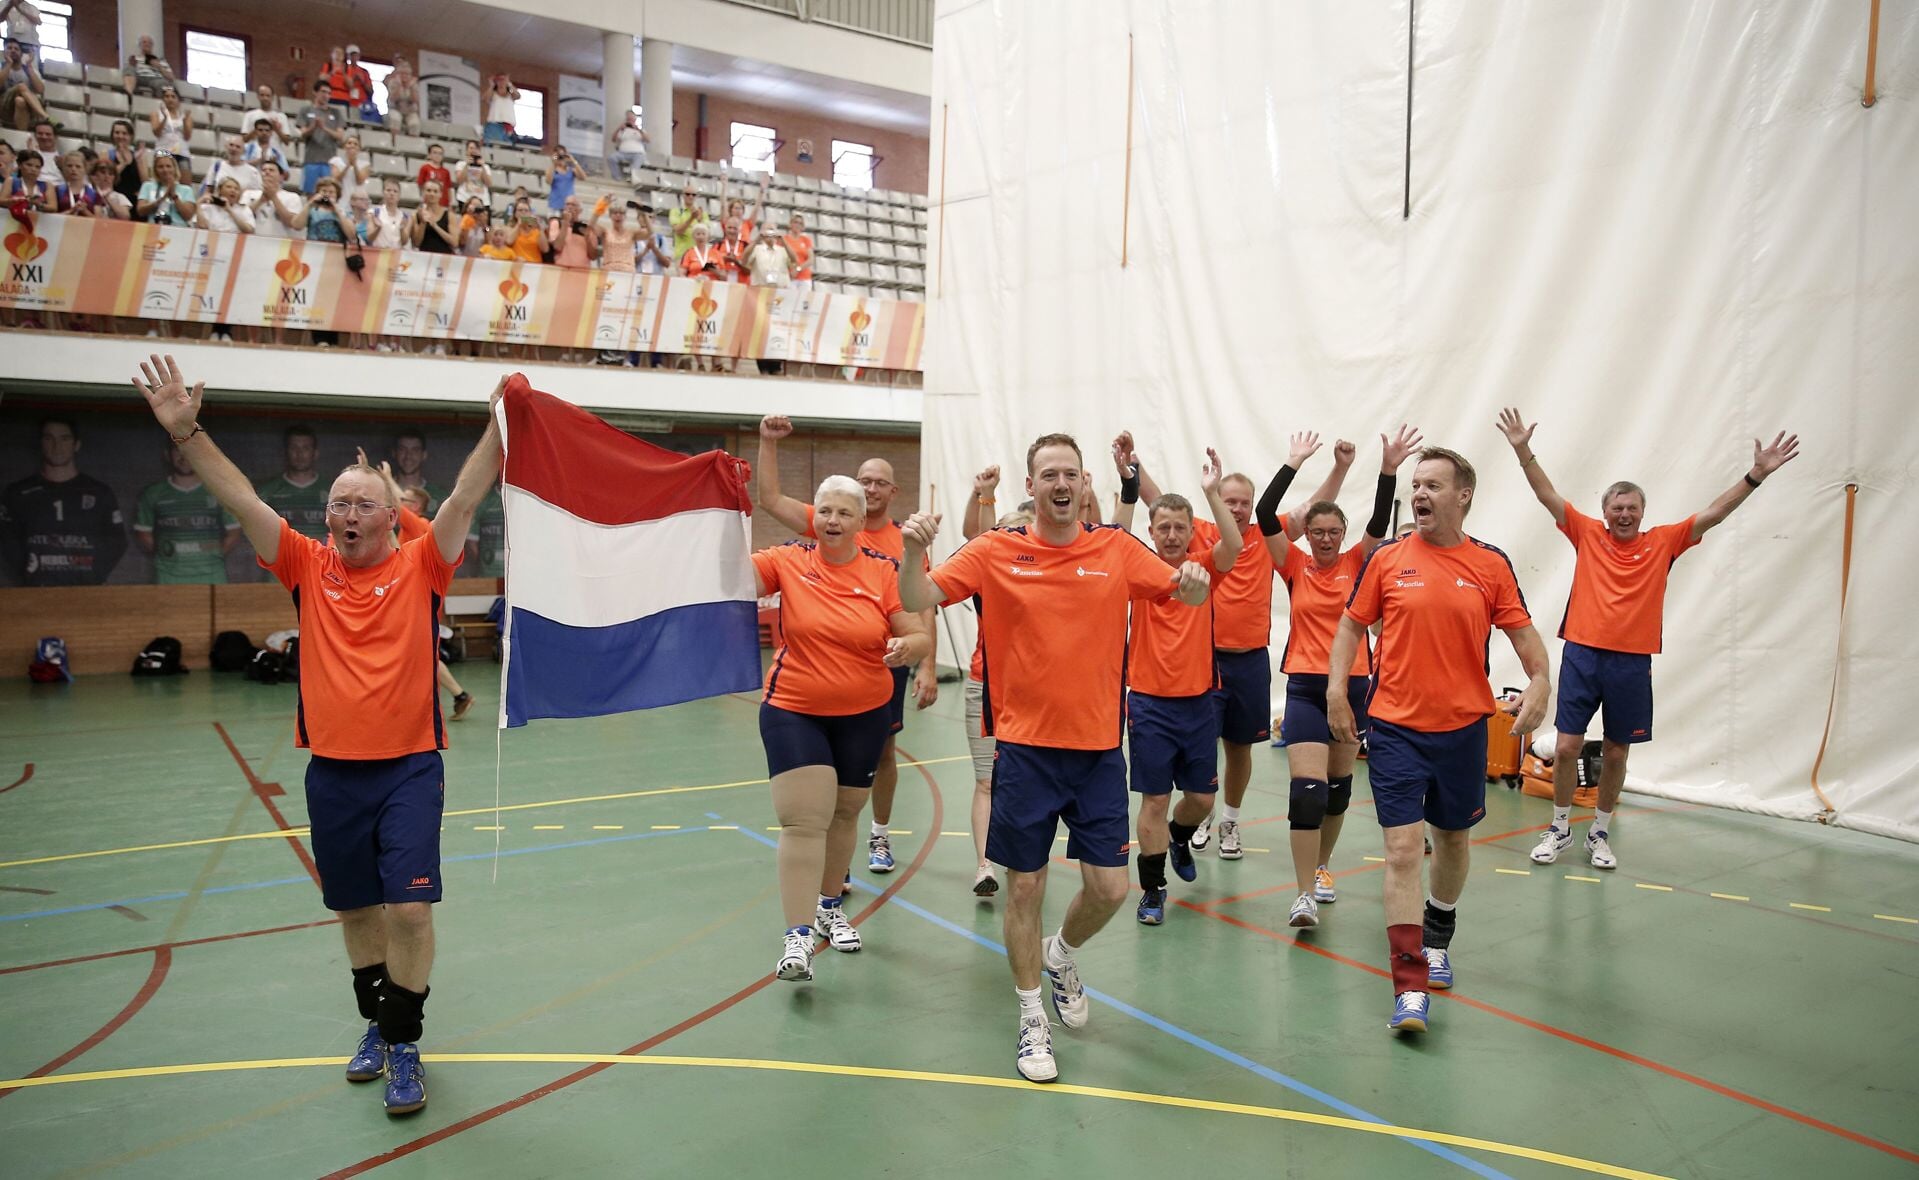 Met Rogier Veltrop als stralend middelpunt juicht de selectie van het Nederlands volleybalteam. De ploeg heeft zojuist goud gewonnen op de World Transplant Games in het Spaanse Malaga. (Foto: World Transplant Games).